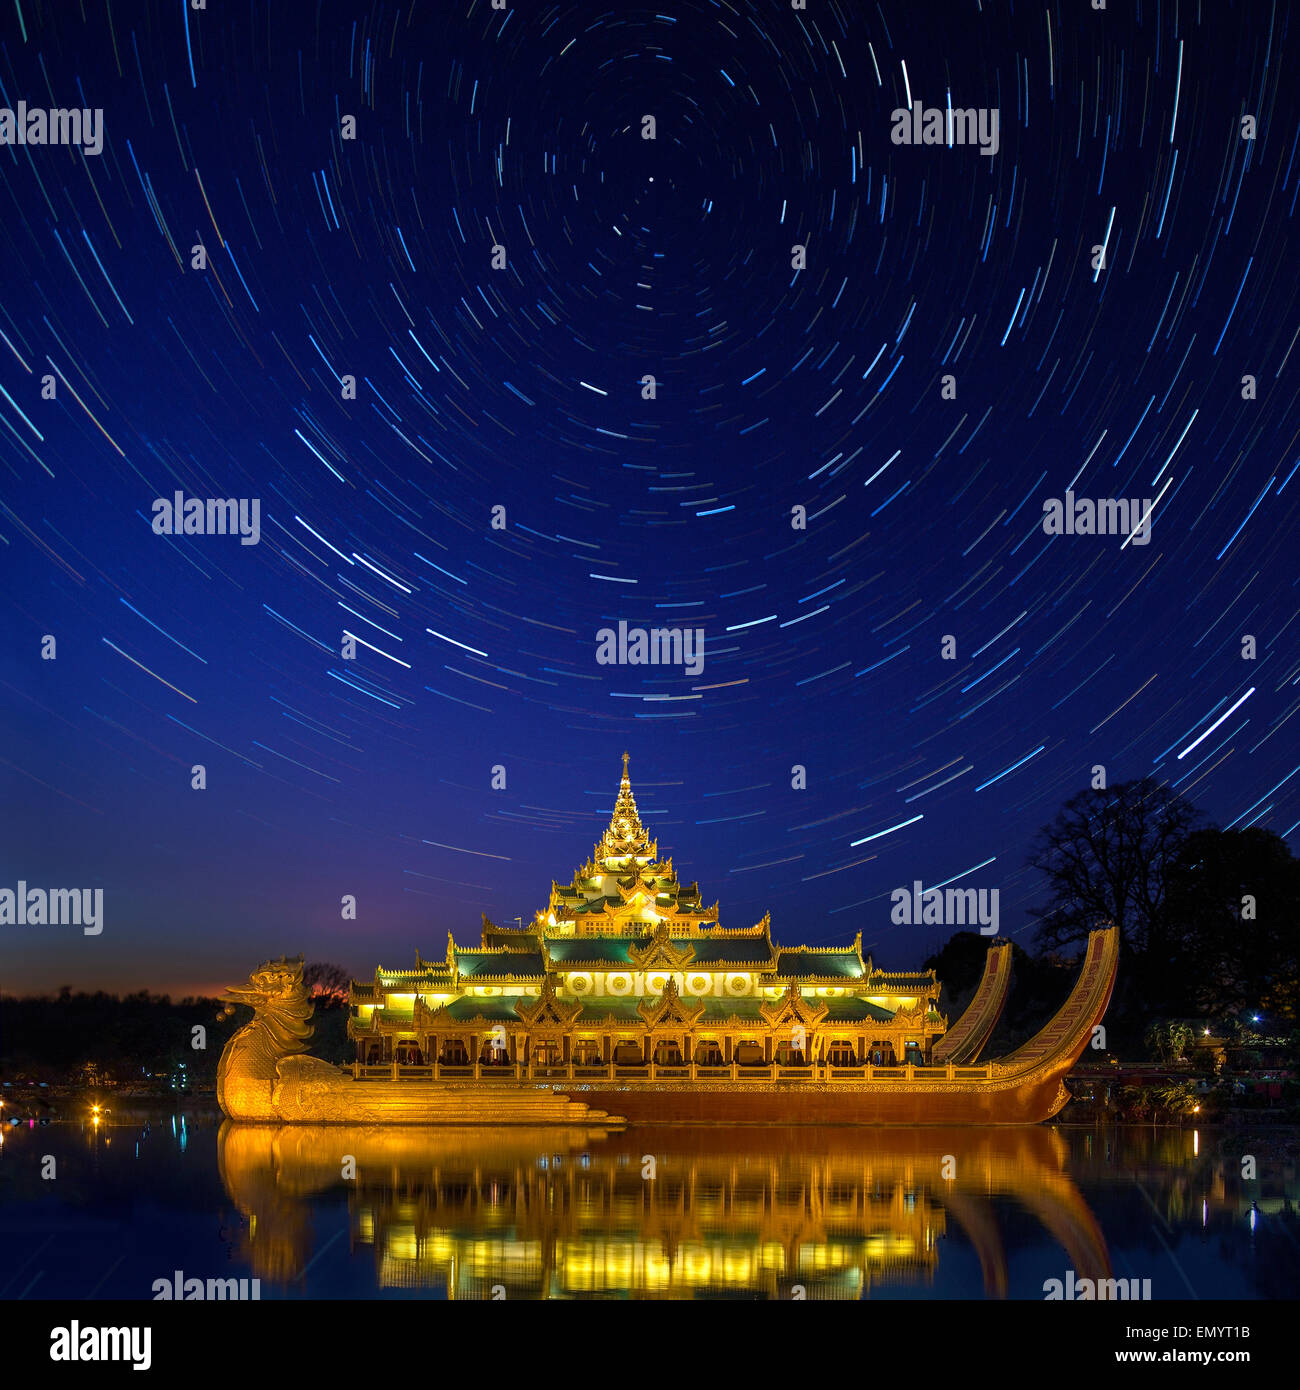 Star Trails au-dessus du Karaweik, une réplique d'une Barge royale sur le Lac Kandawgyi à Yangon au Myanmar. Banque D'Images